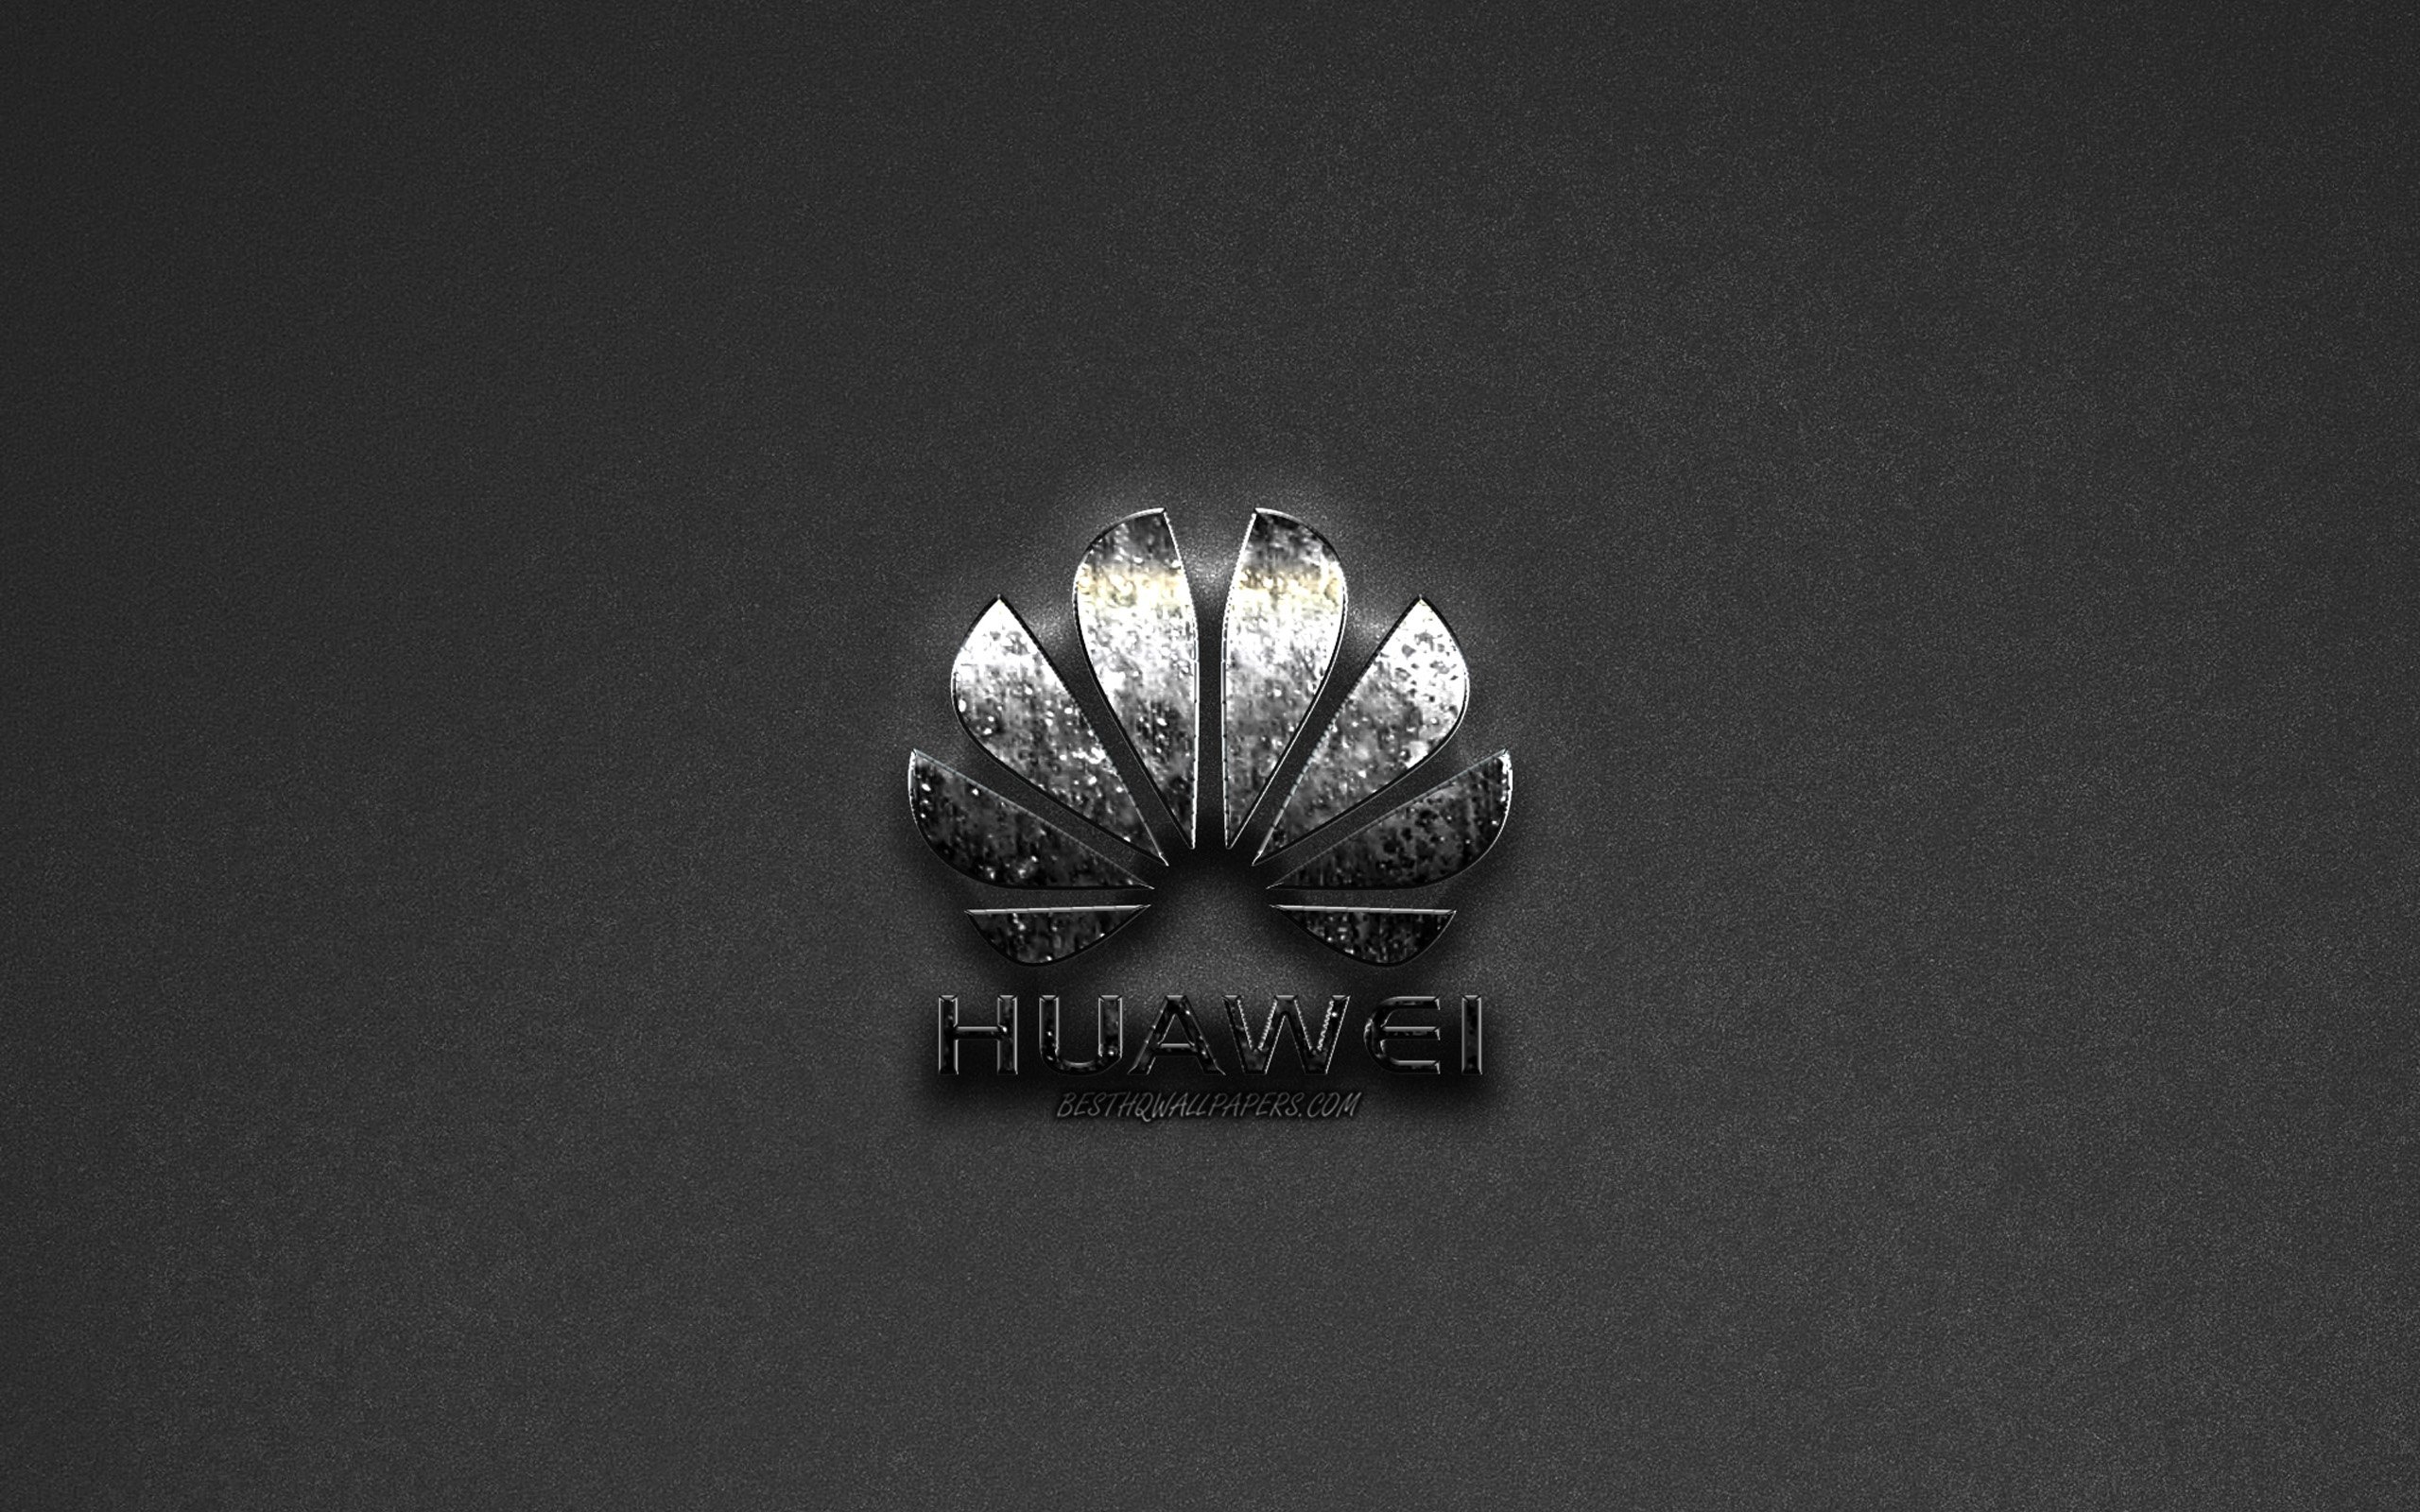 ダウンロード画像 ファーウェイロゴ グレー背景 金属のロゴ エンブレム Huawei 画面の解像度 2560x1600 壁紙デスクトップ上